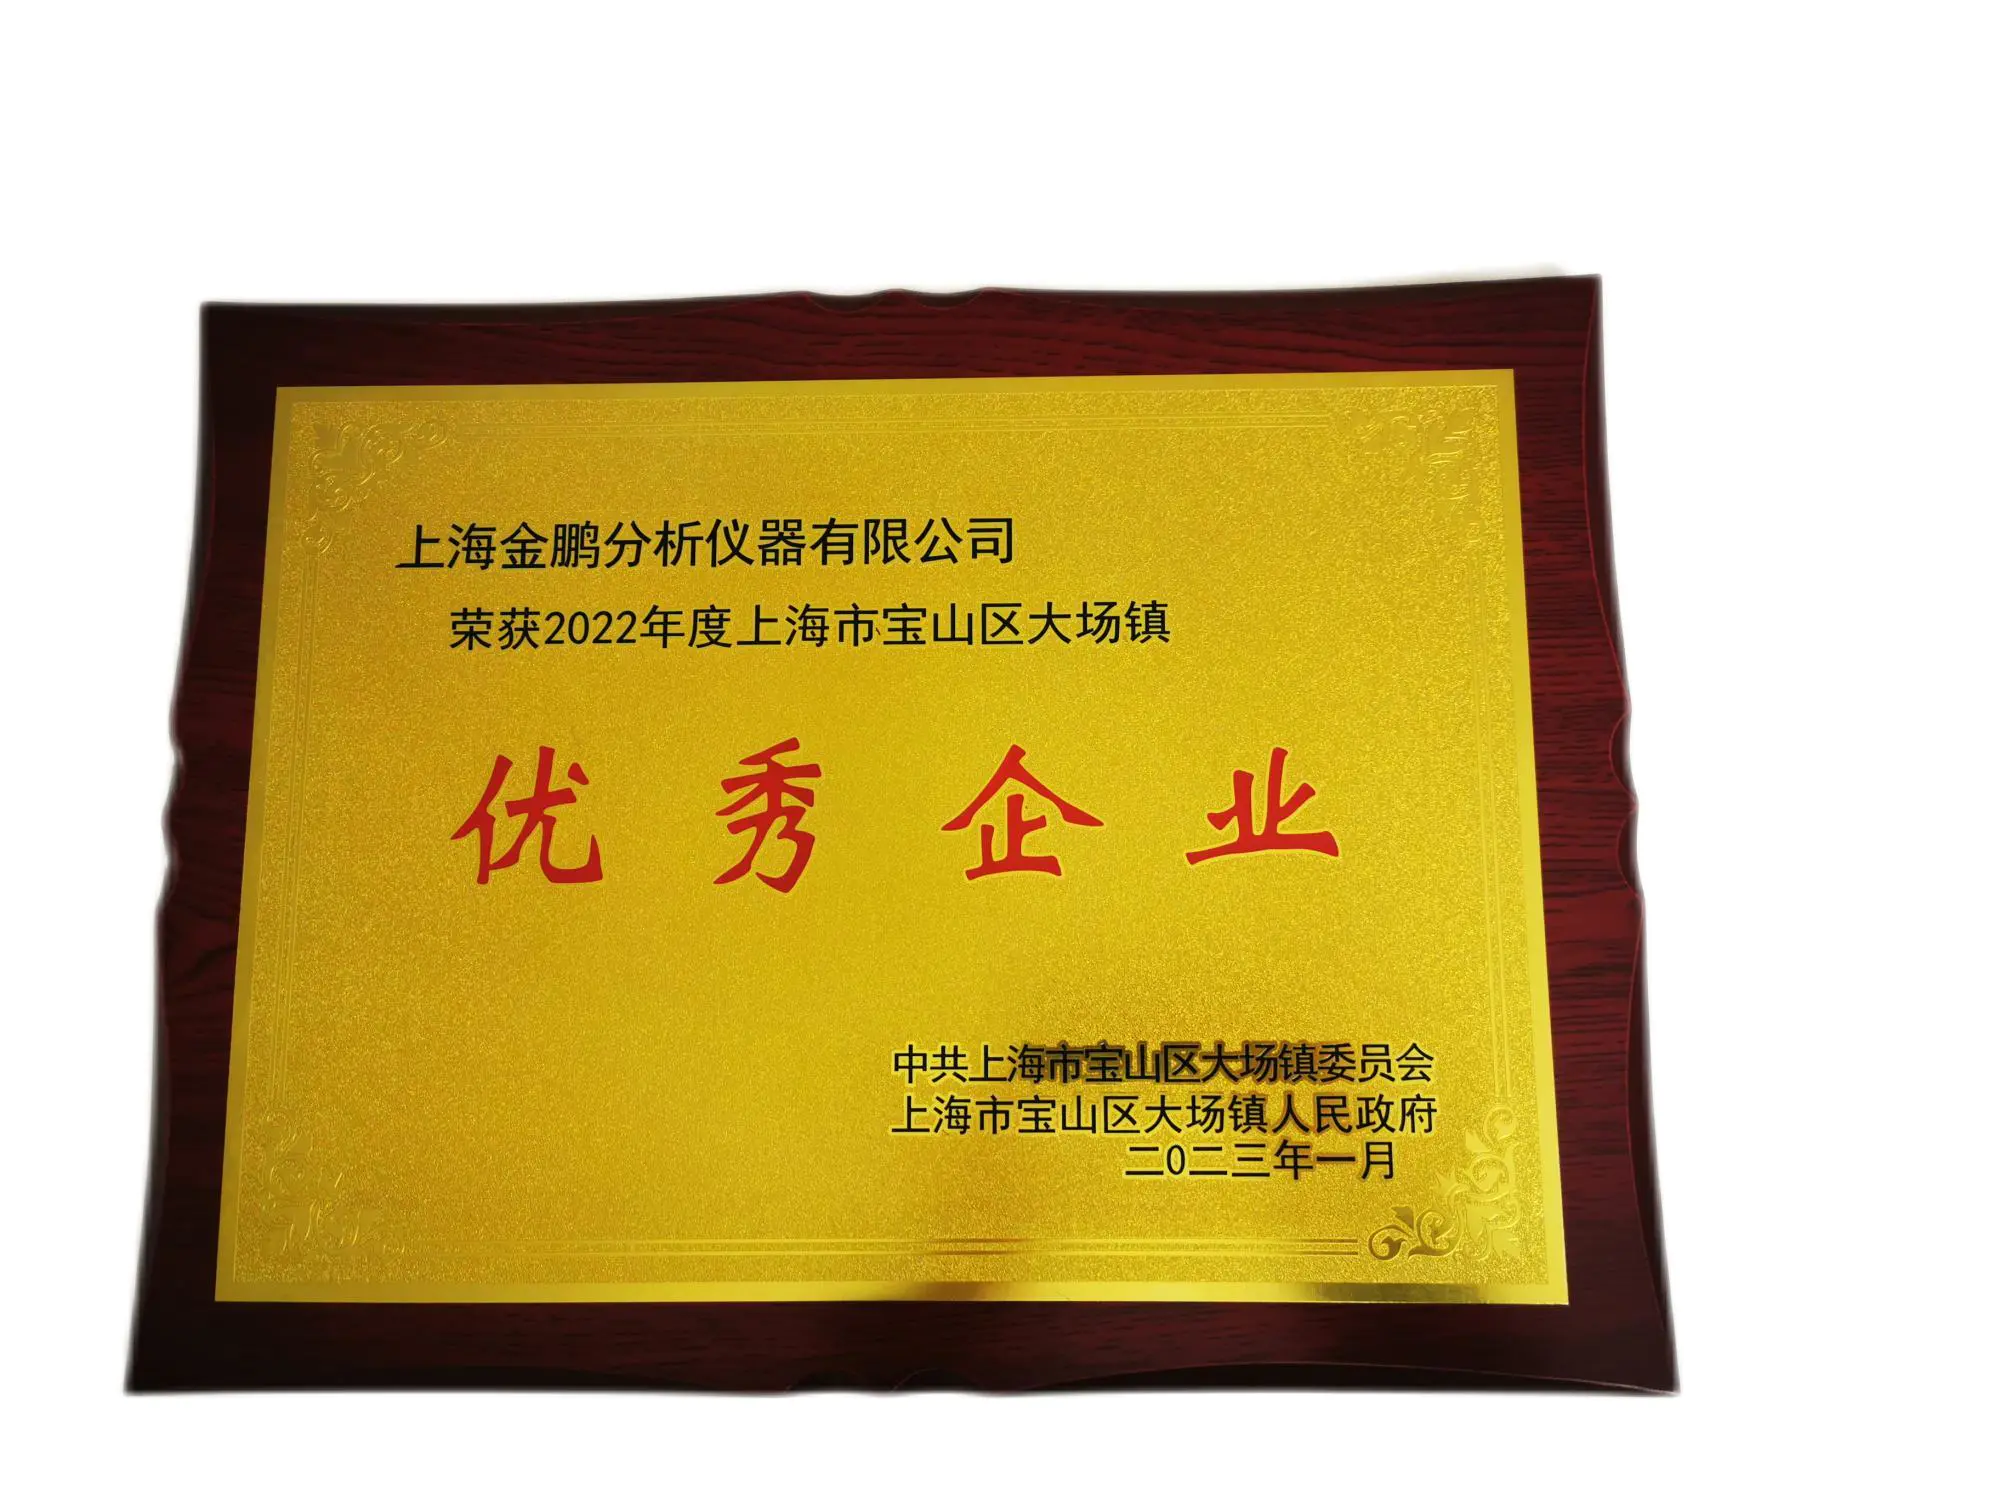 上海金鹏获评“2022年度上海市宝山区大场镇优良企业”的荣誉